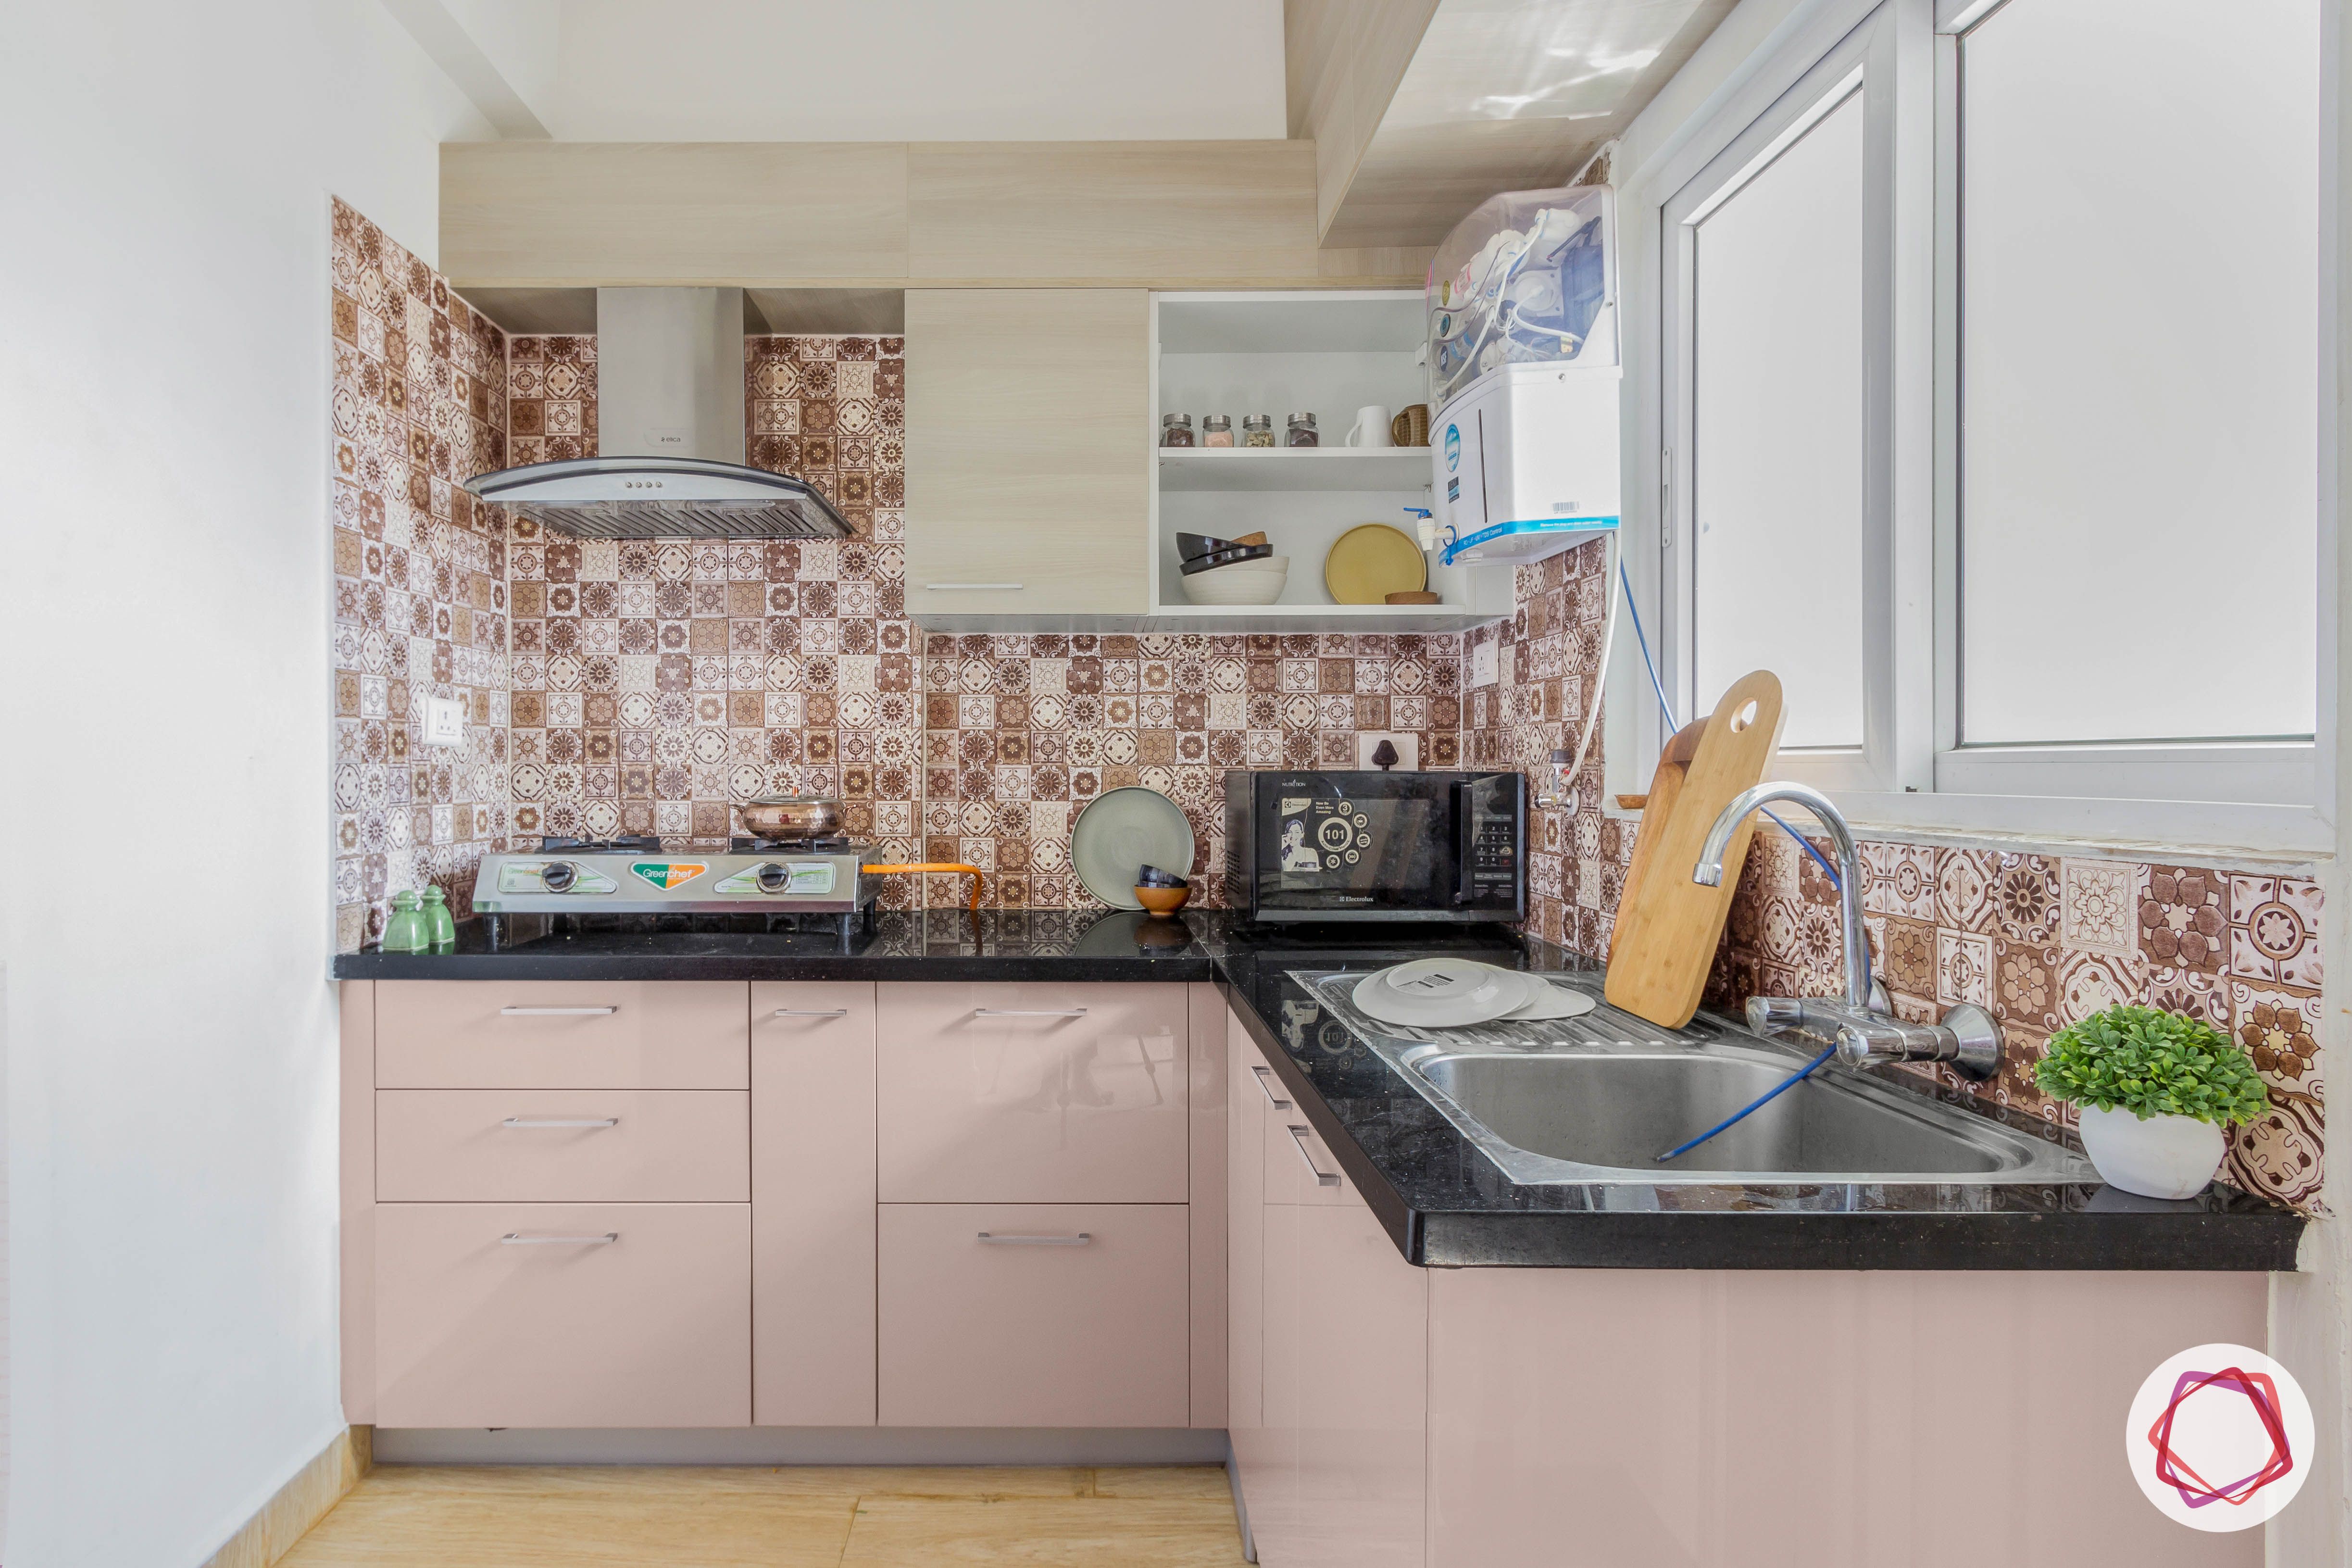 New home design_kitchen full view